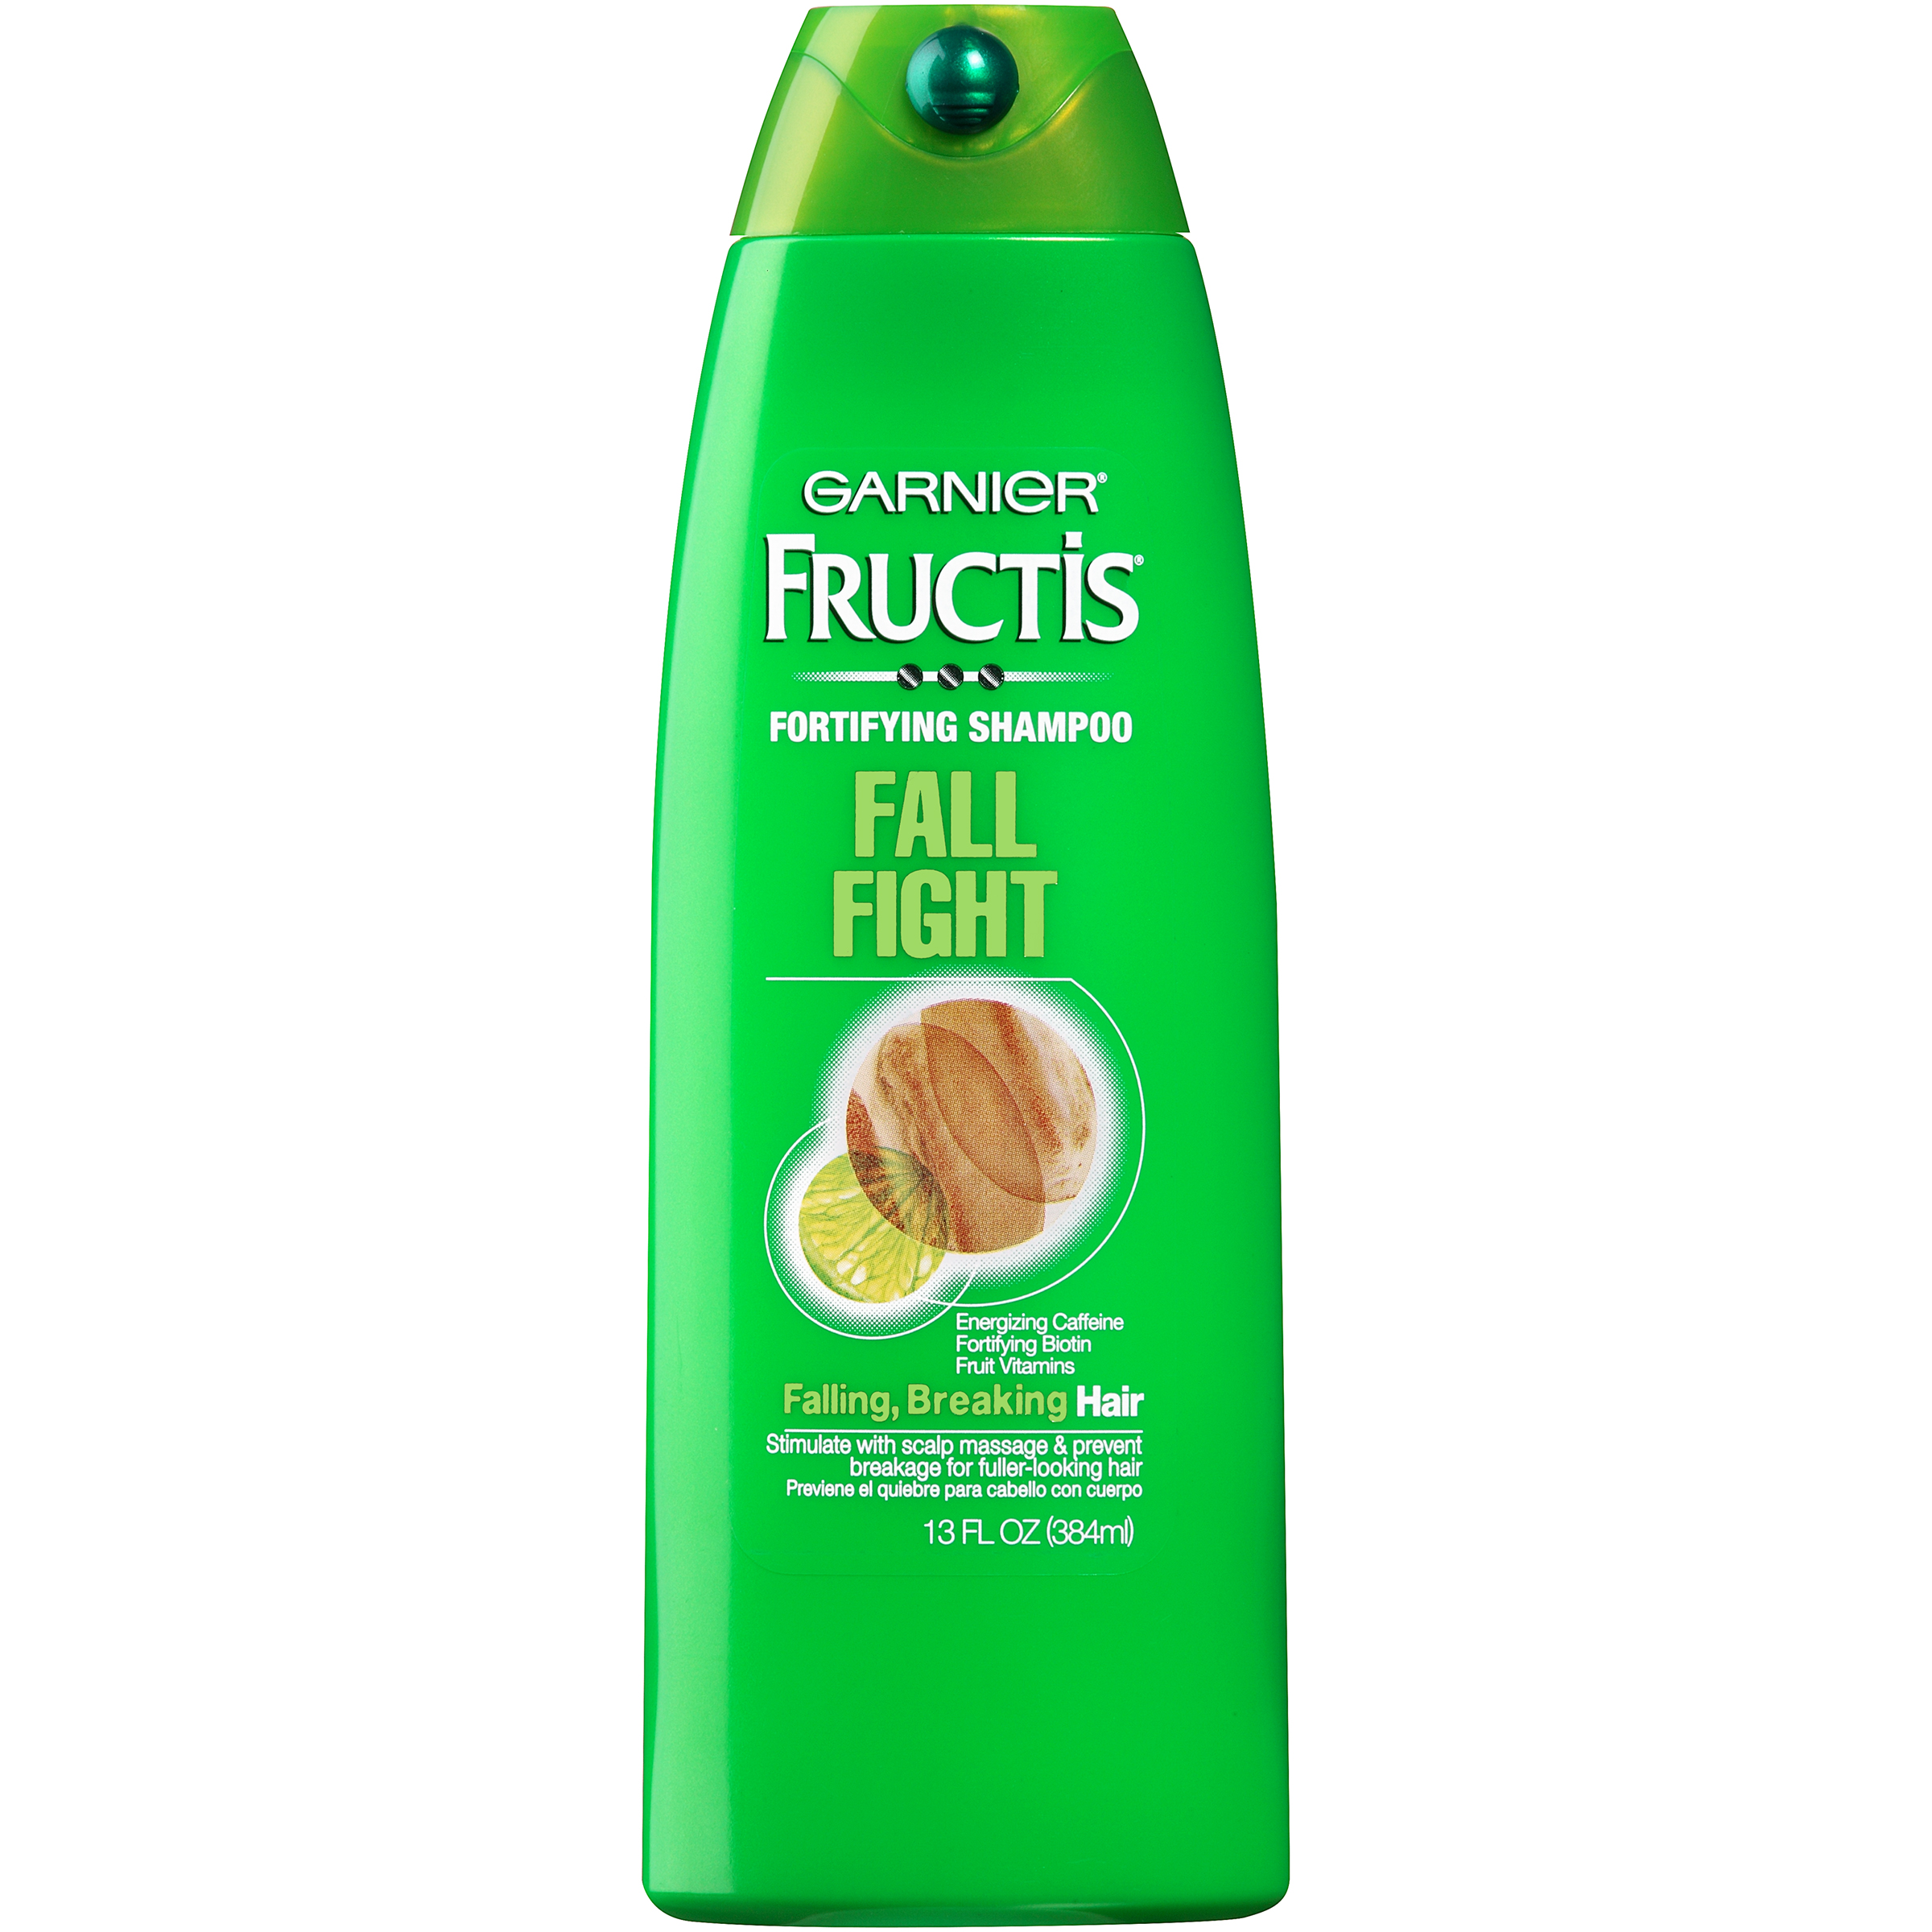 Garnier Fructis Fall Fight Fortifying Shampoo, 13 fl oz (384 ml)